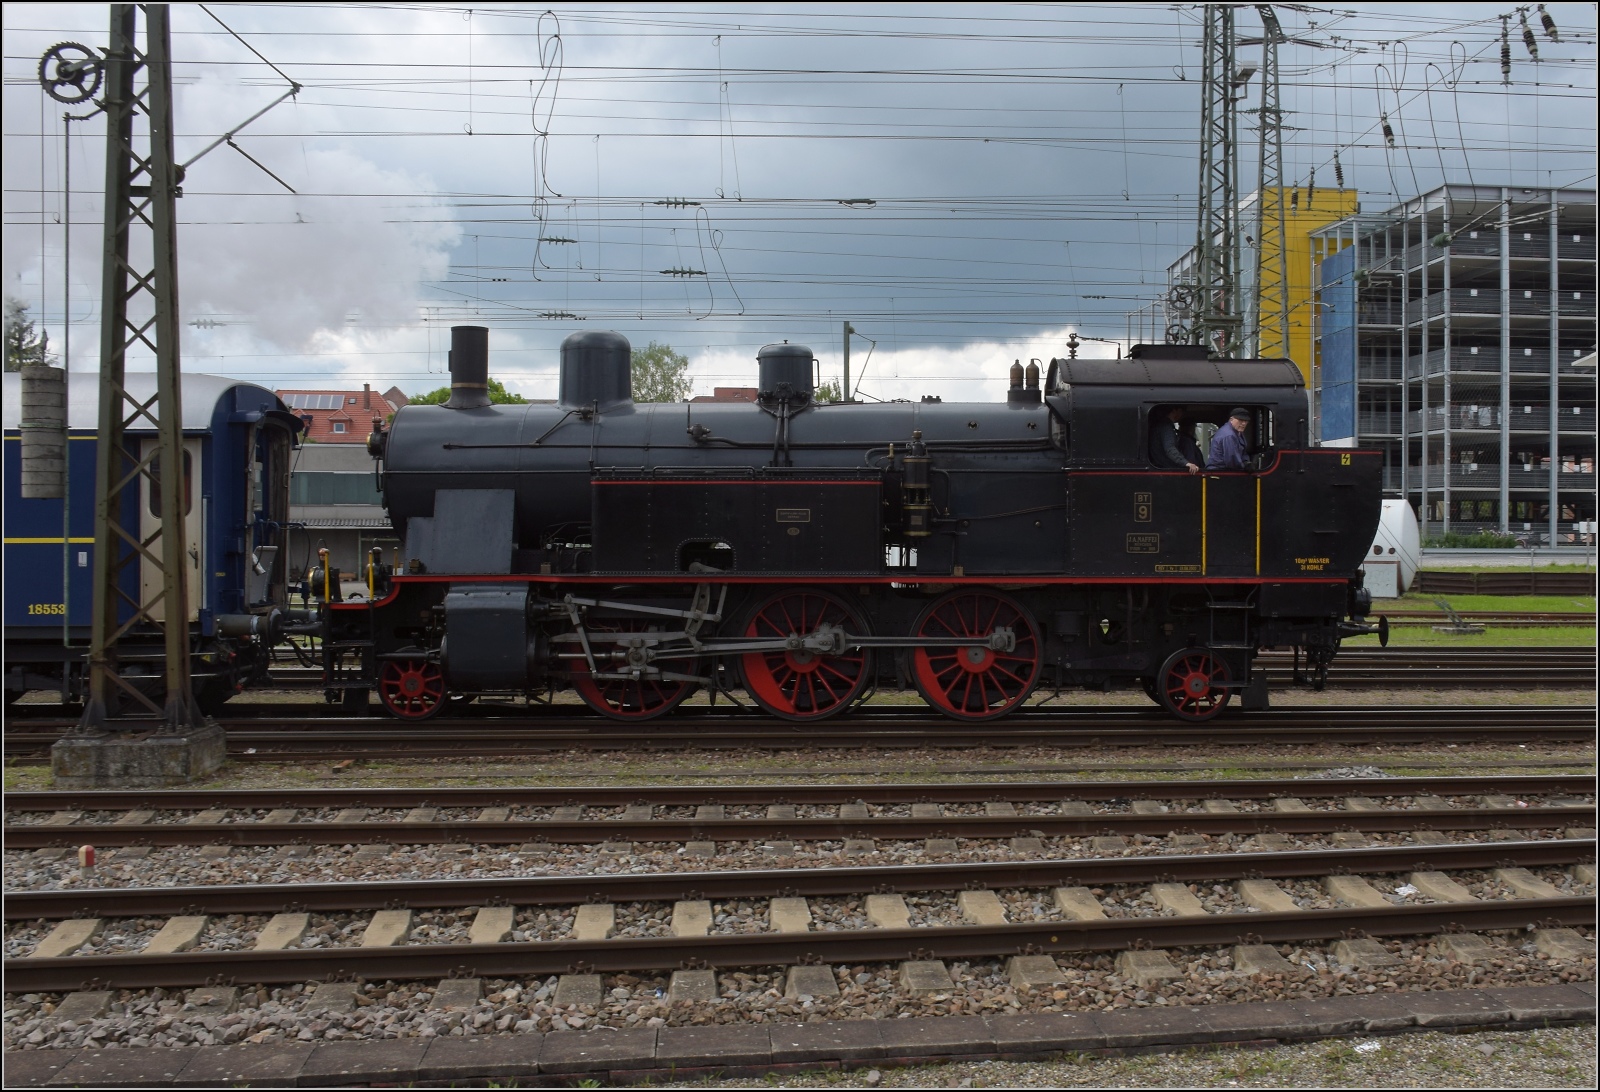 Seit 54 Jahren das erste durchgehende Personenzugpaar auf der Strecke Winterthur – Singen ber Etzwilen.

Los geht es fr diesen besonderen Zug vom Etzwiler Bahnsteig, gezogen von Eb 3/5 9 der BT. Singen, Mai 2023.